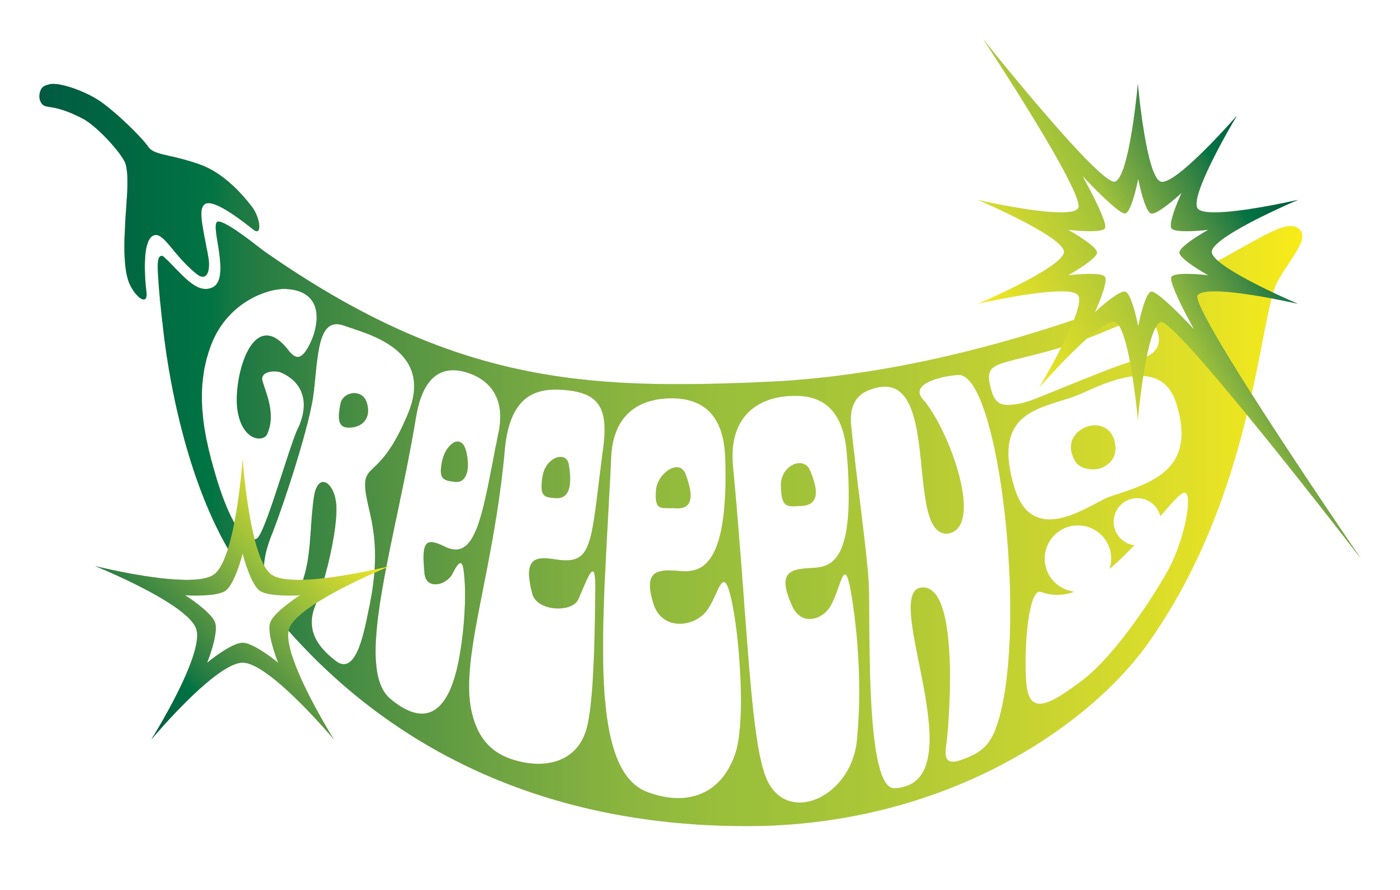 GReeeeN、春日井製菓「グリーン豆」50周年記念ソング「グリンピース」を書き下ろし